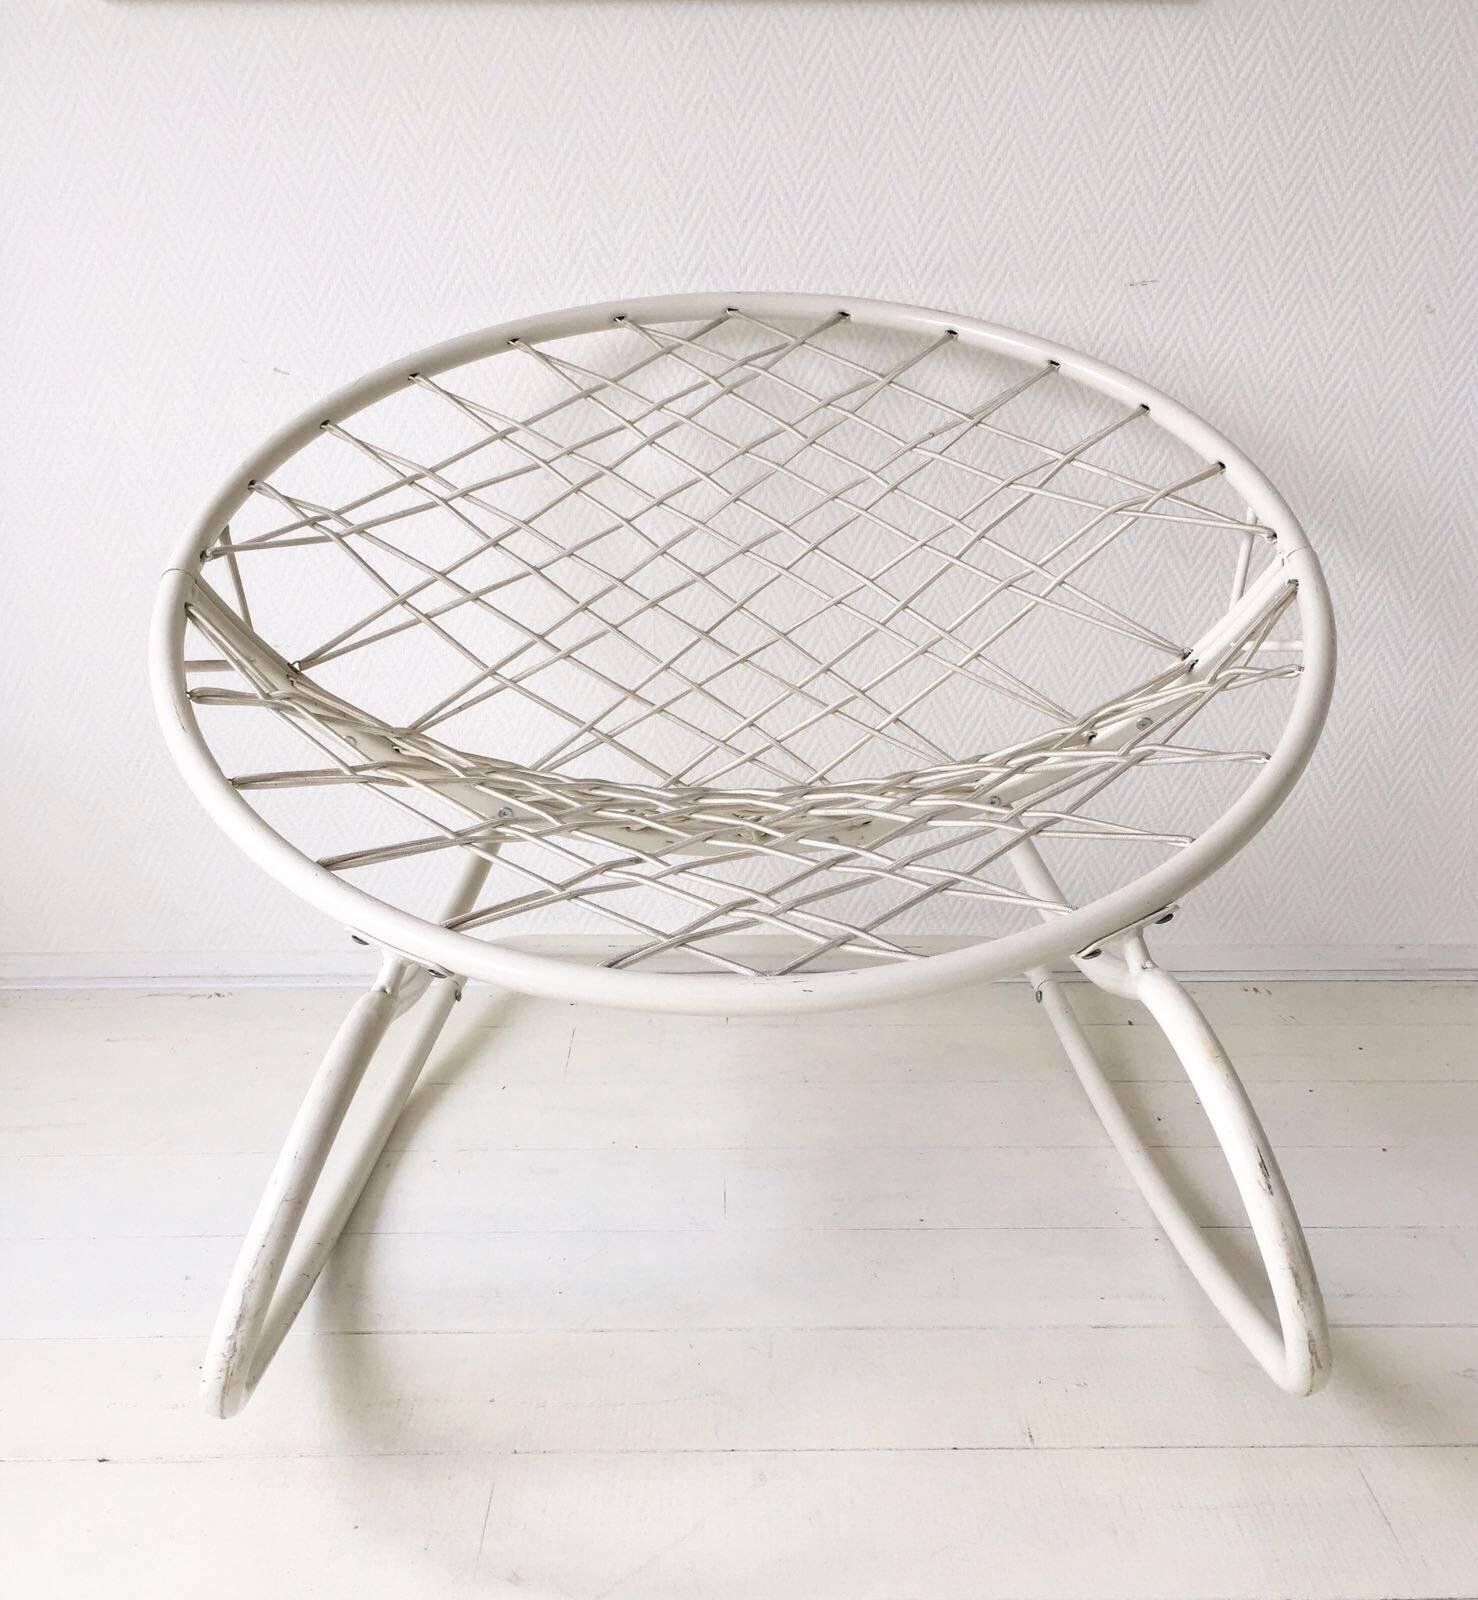 Aus der PS-Serie produzierte Ikea diesen Lounge-/Schaukelstuhl, der von Niels Gammelgaard entworfen wurde. Der Stuhl besteht aus einem (nicht) weiß emaillierten Metallgestell mit elastischen Schnüren als Polsterung. Der Stuhl wird nicht mehr